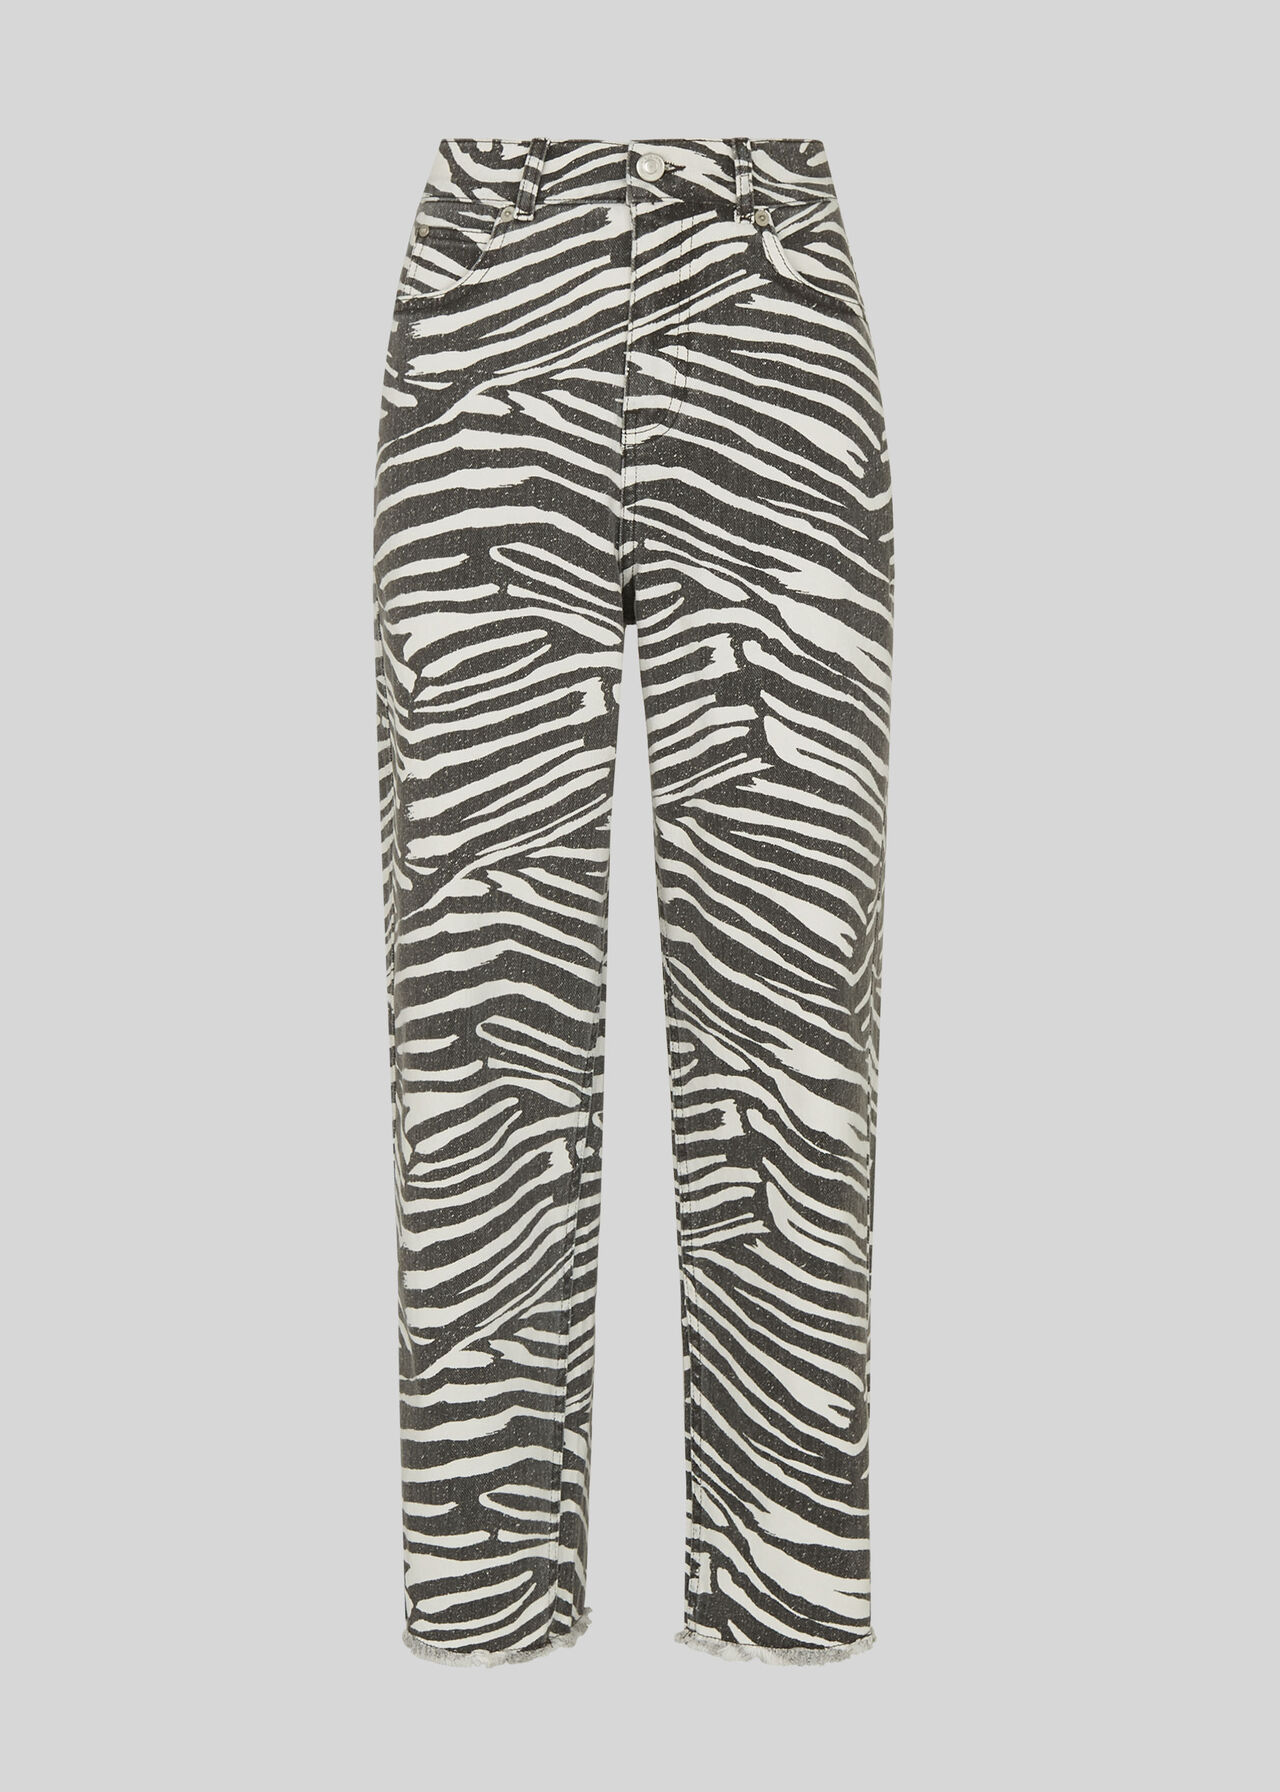 Zebra High Waist Barrel Jean Zebra Print